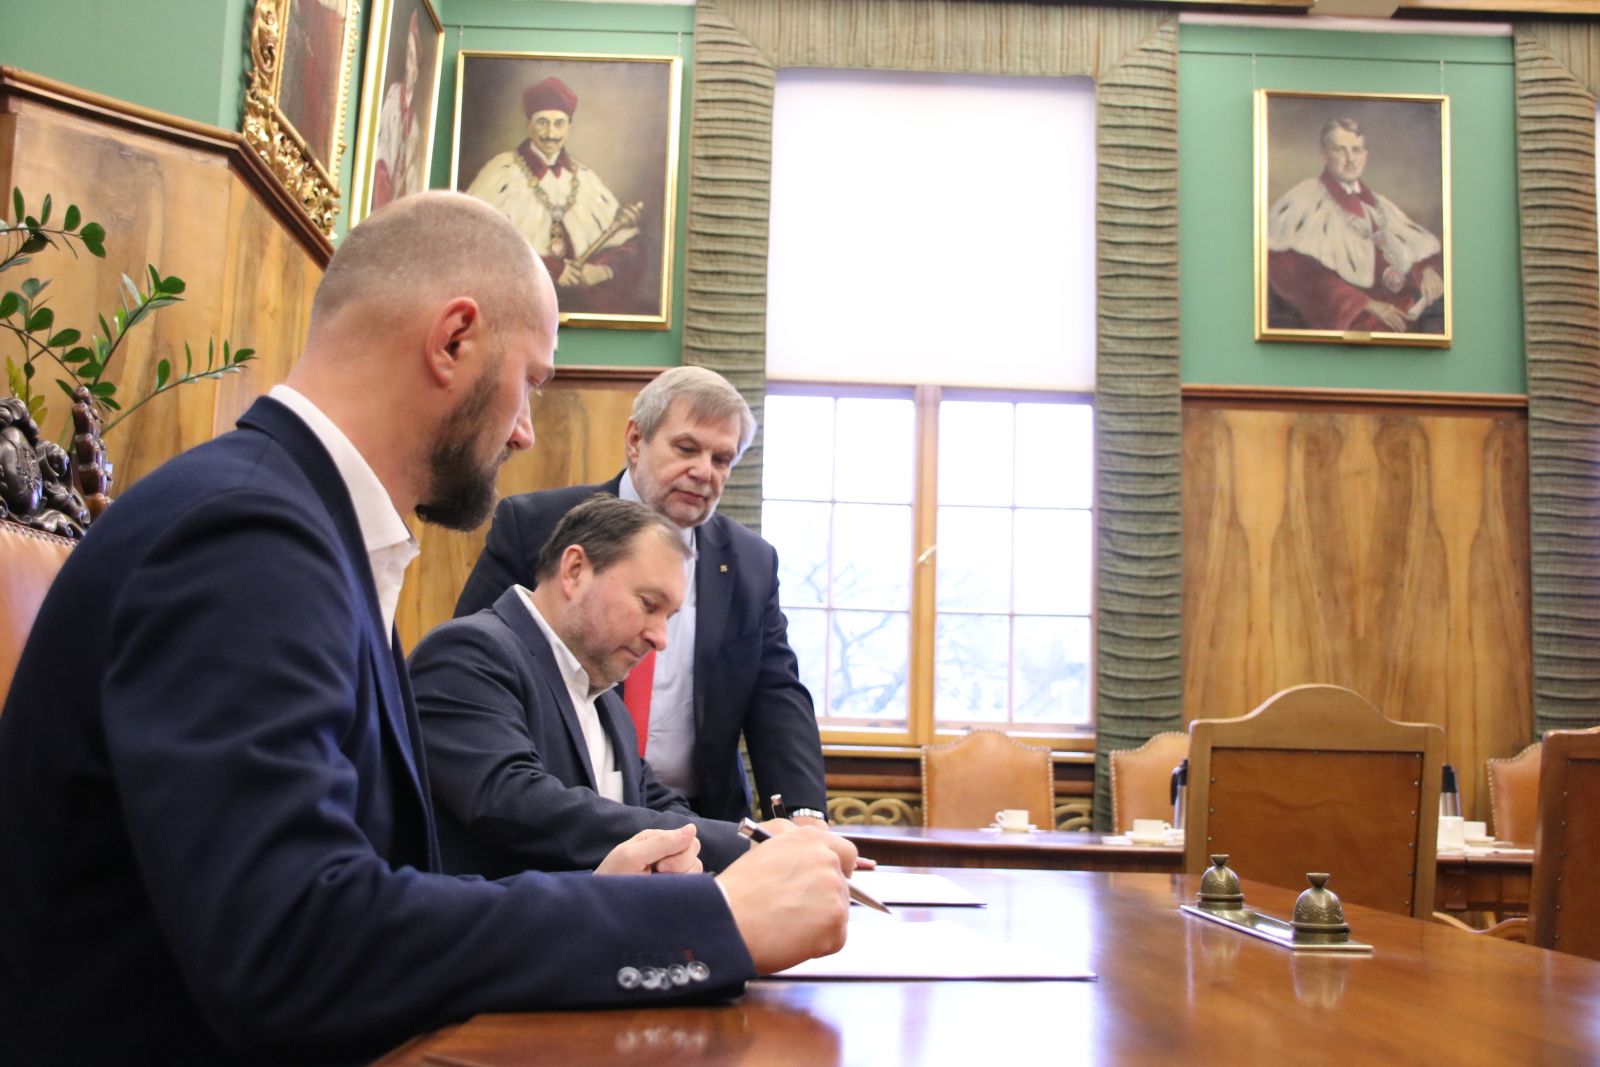 Podpisanie umowy o współpracy pomiędzy Uniwersytetem a Beyond.pl